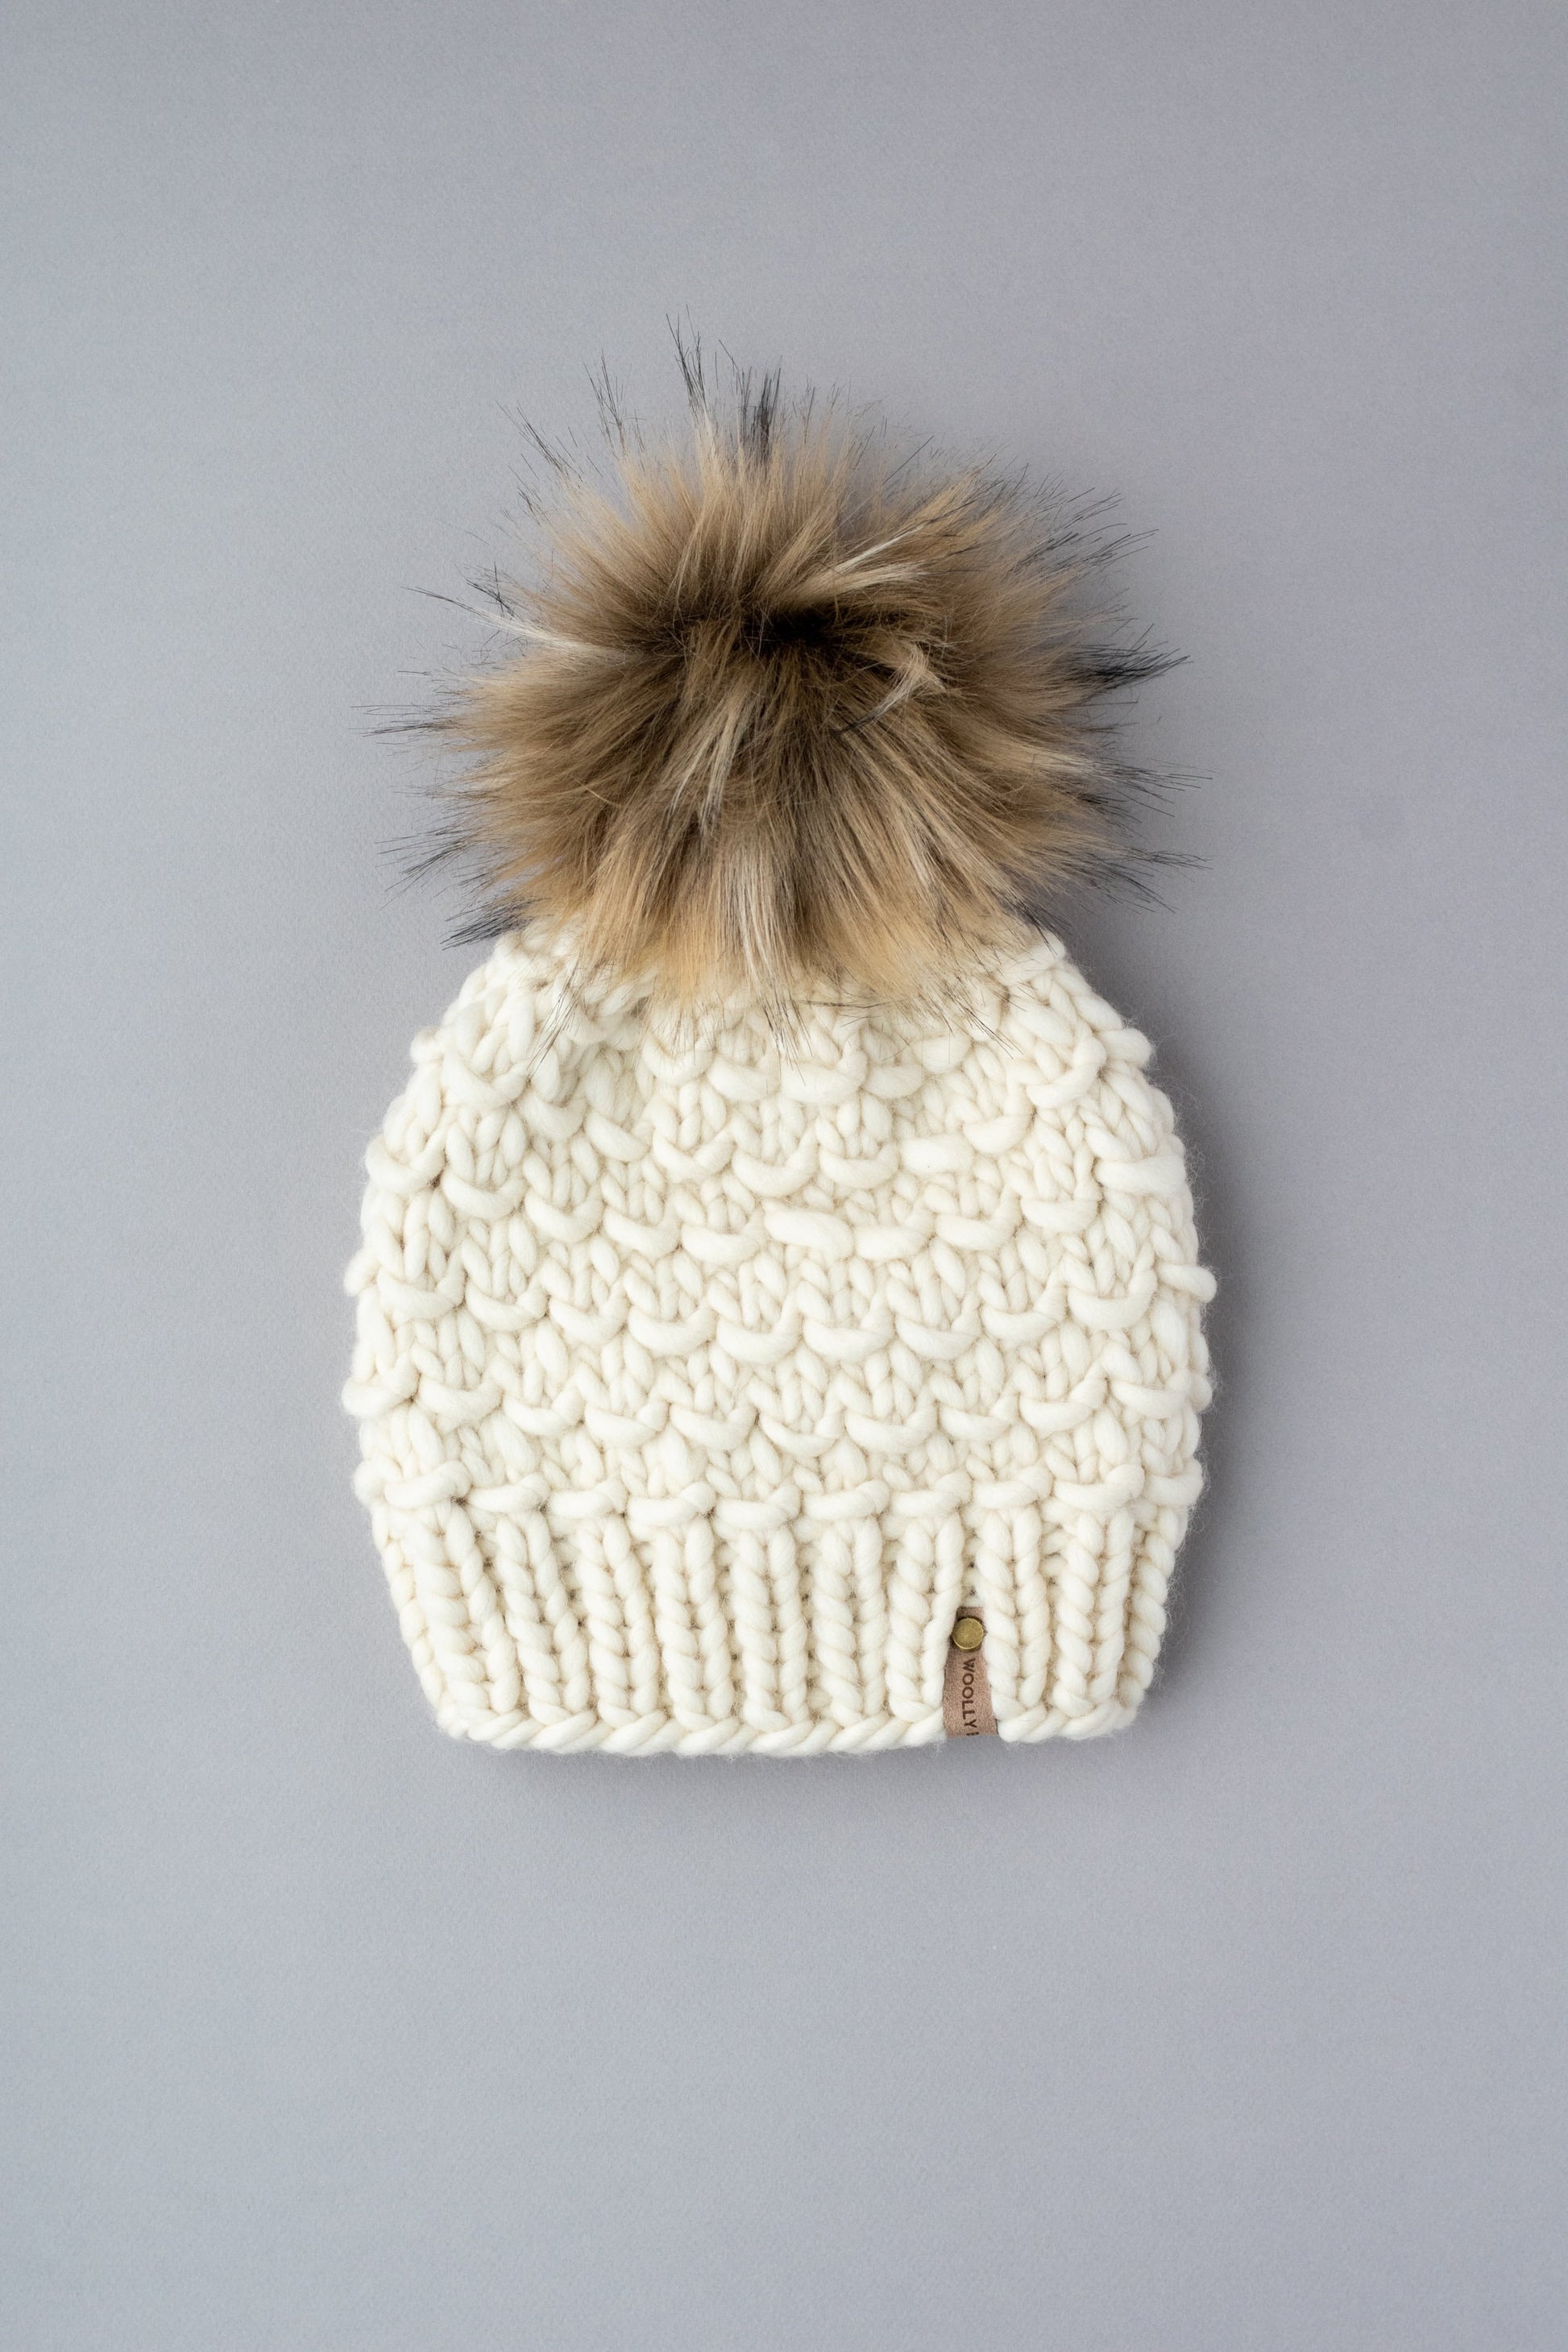 Ivory Hand Knit Wool Hat with Pom Pom